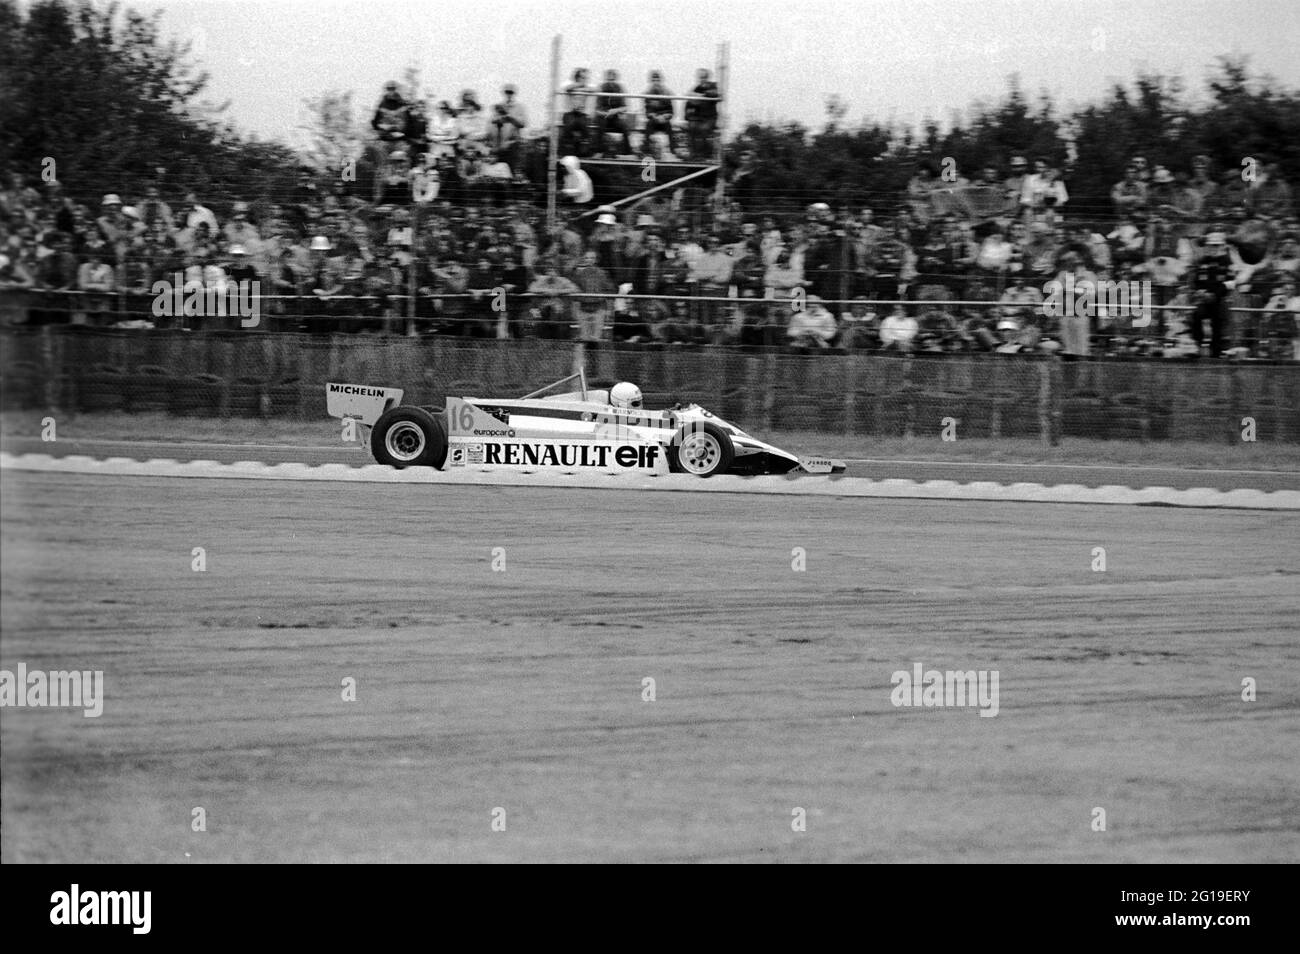 René Arrnoux à la vitesse de la Renault RE30 lors de la pratique du Grand Prix britannique de Silverstone 1981. Banque D'Images